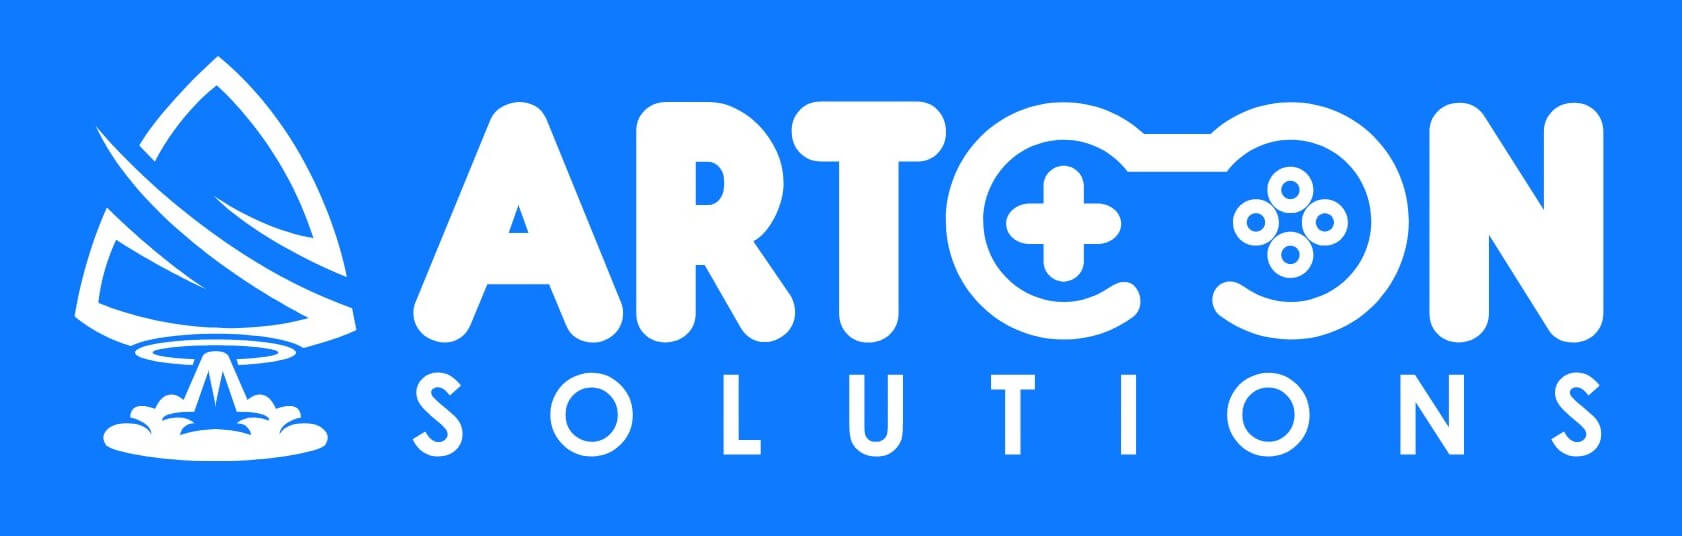 artoon-solutions